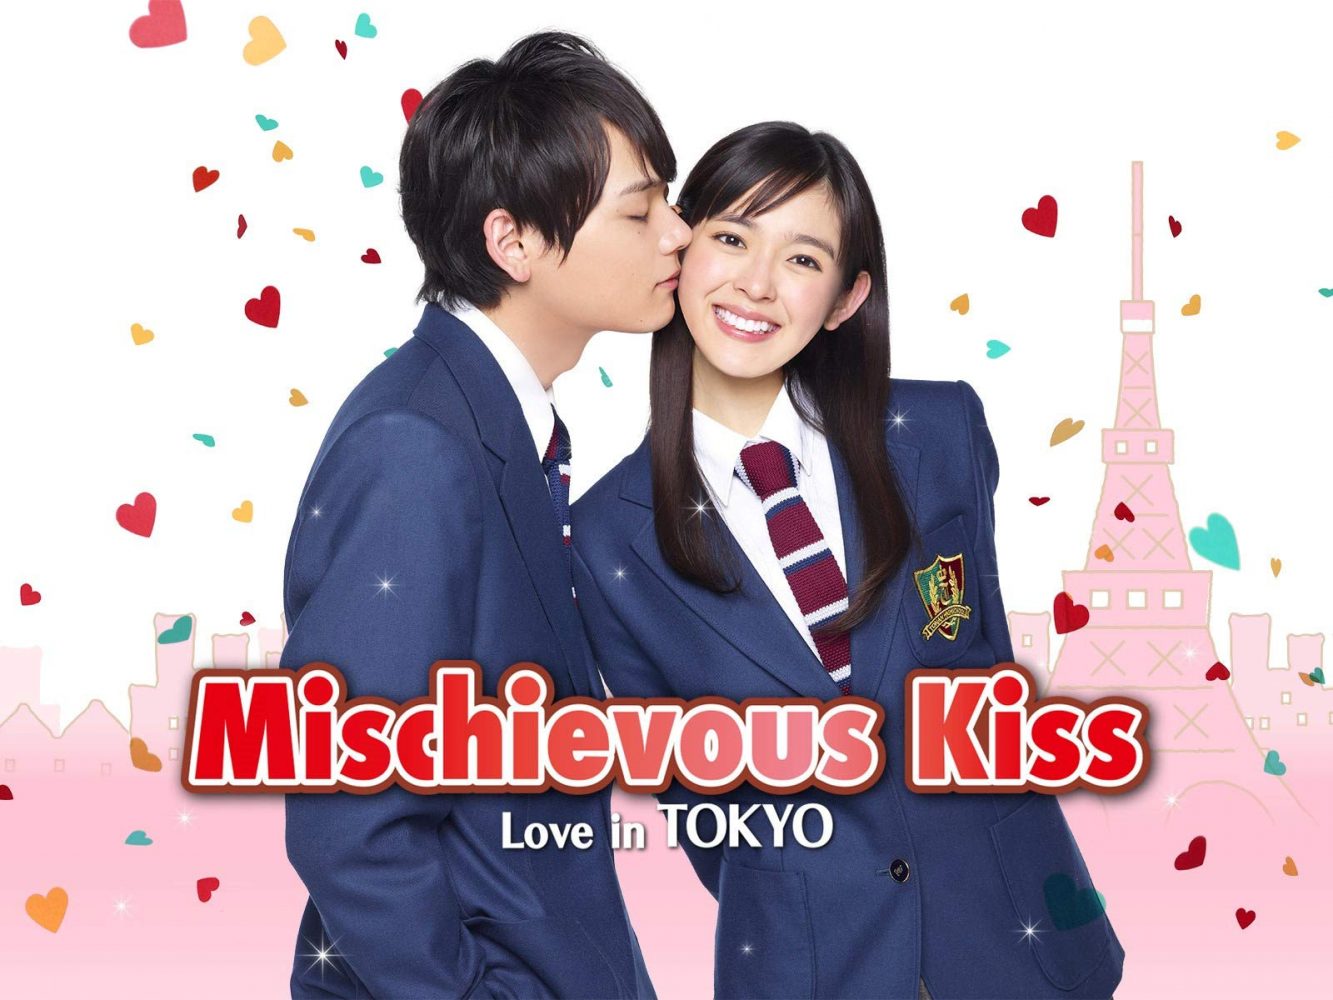 Nụ hôn tình cờ - Nụ hôn tinh nghịch: Tình yêu ở Tokyo (2013)